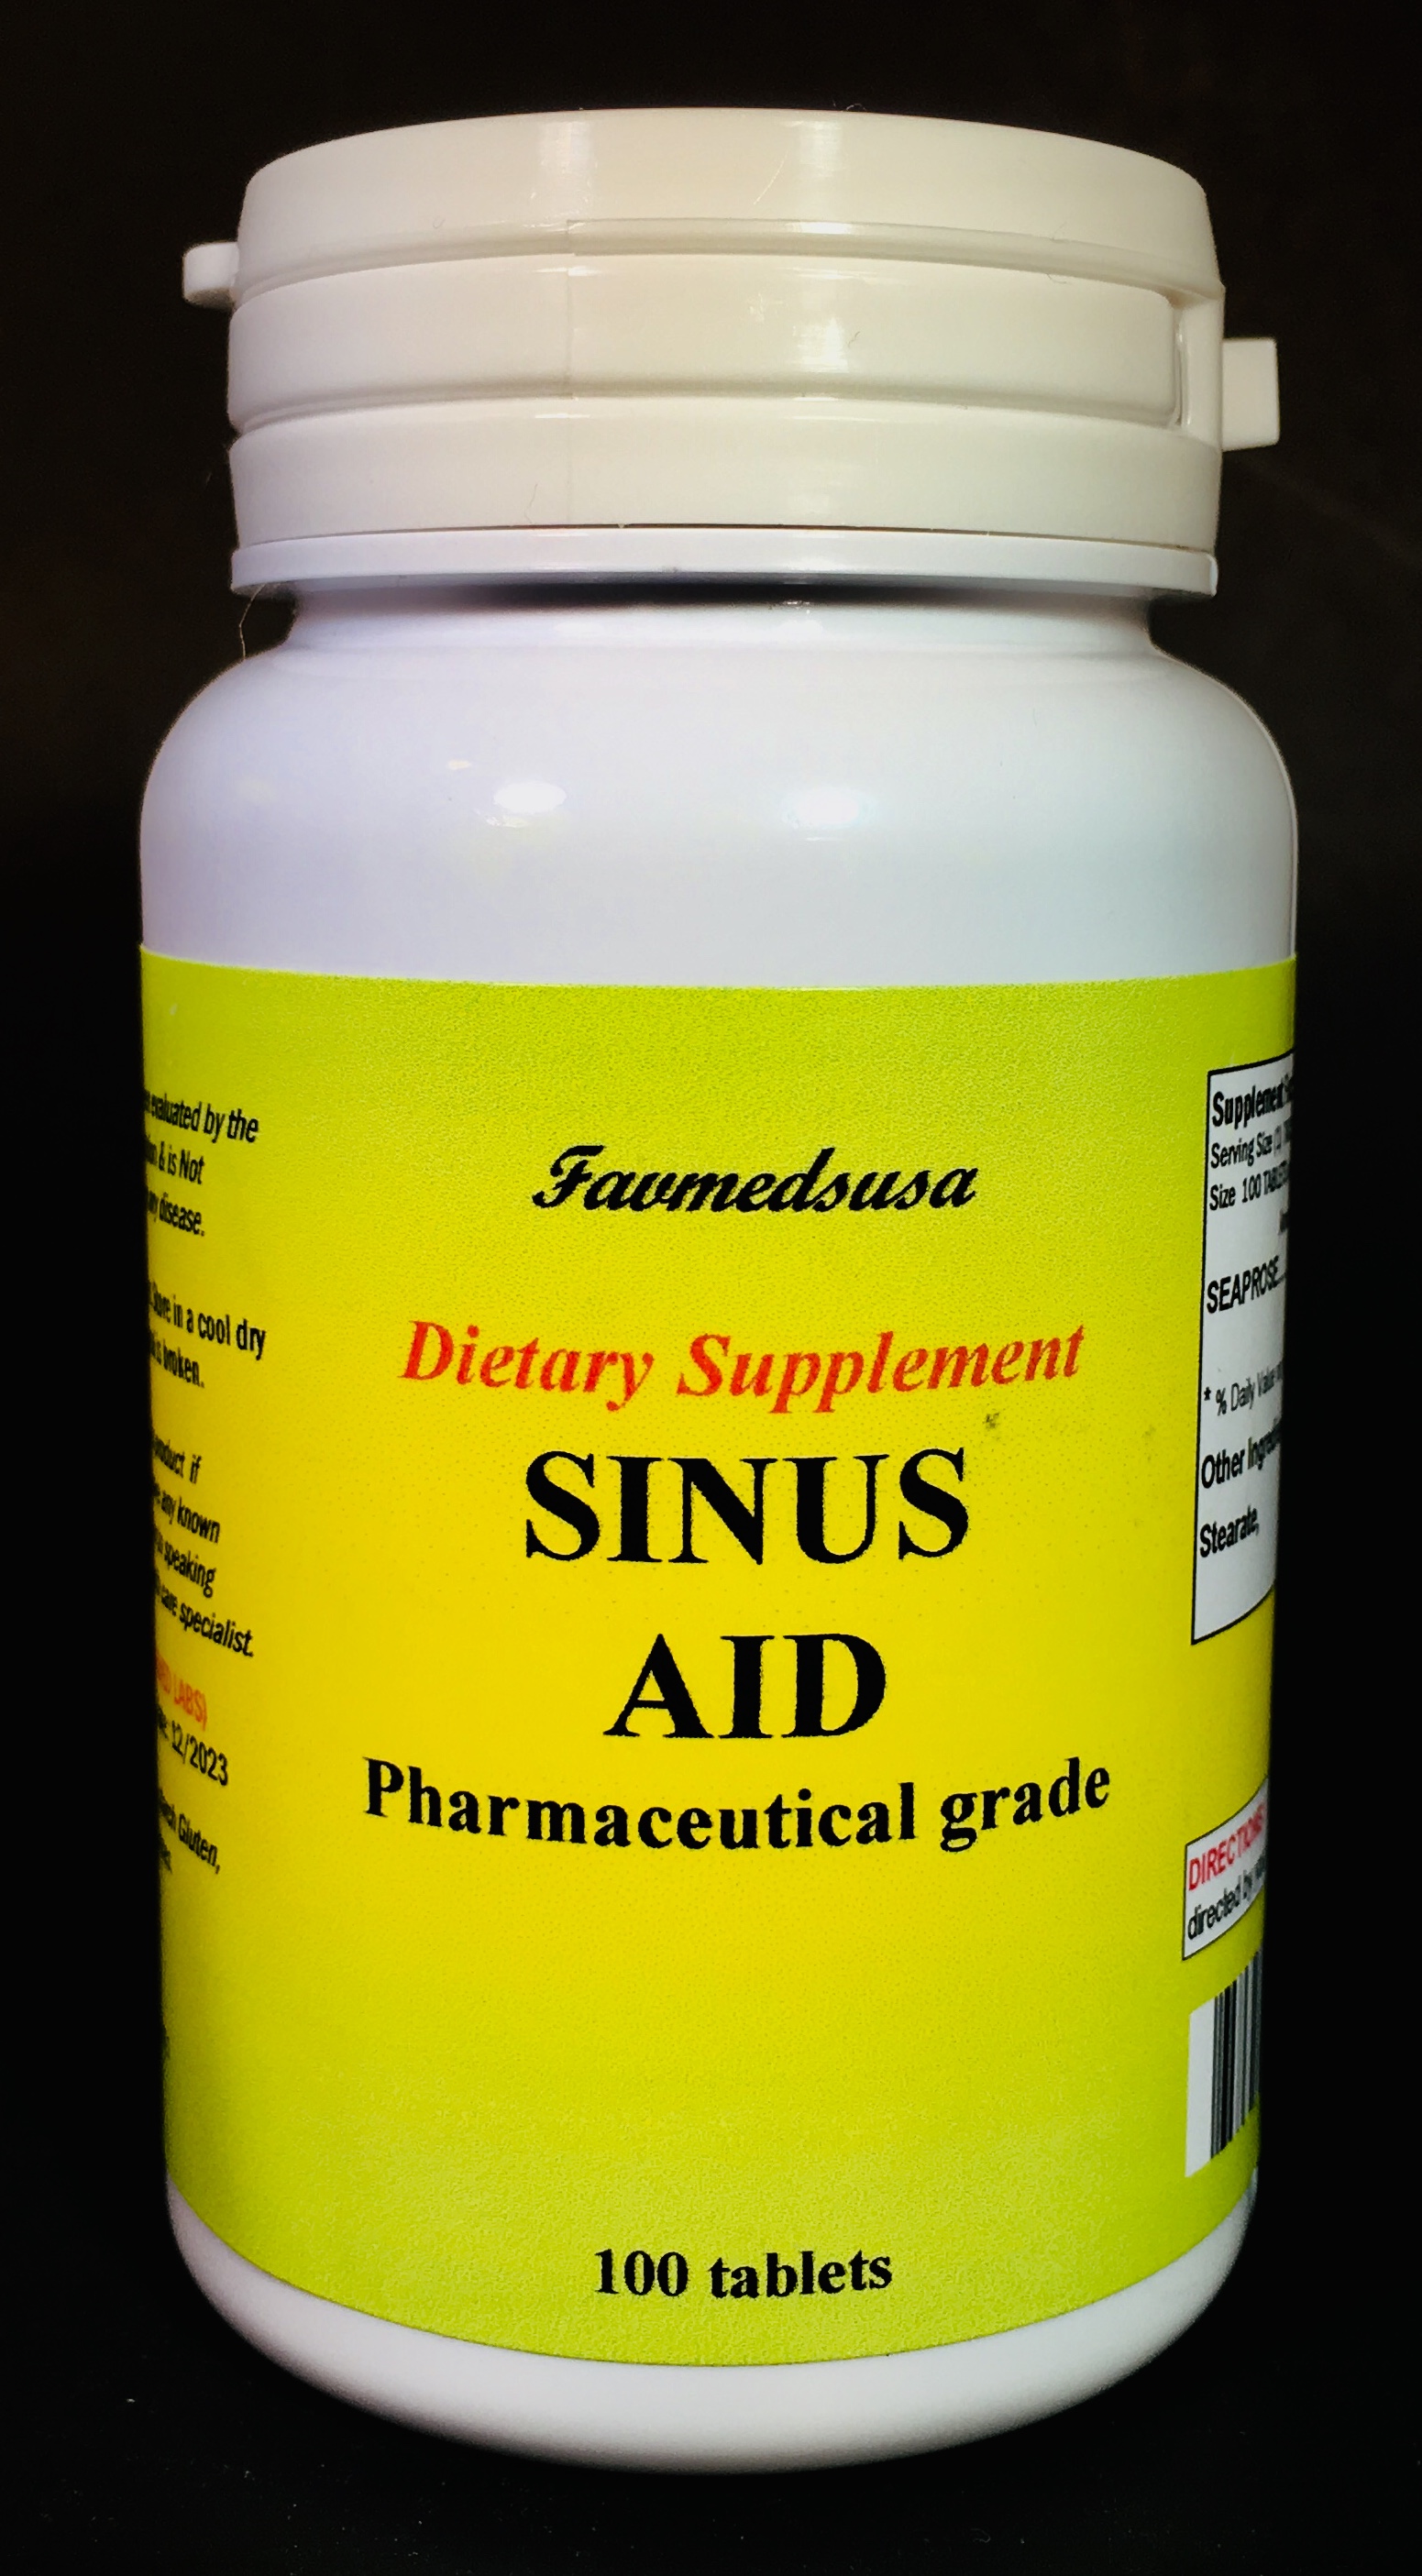 Sinus Aid (Seaprose) - 100 tablets